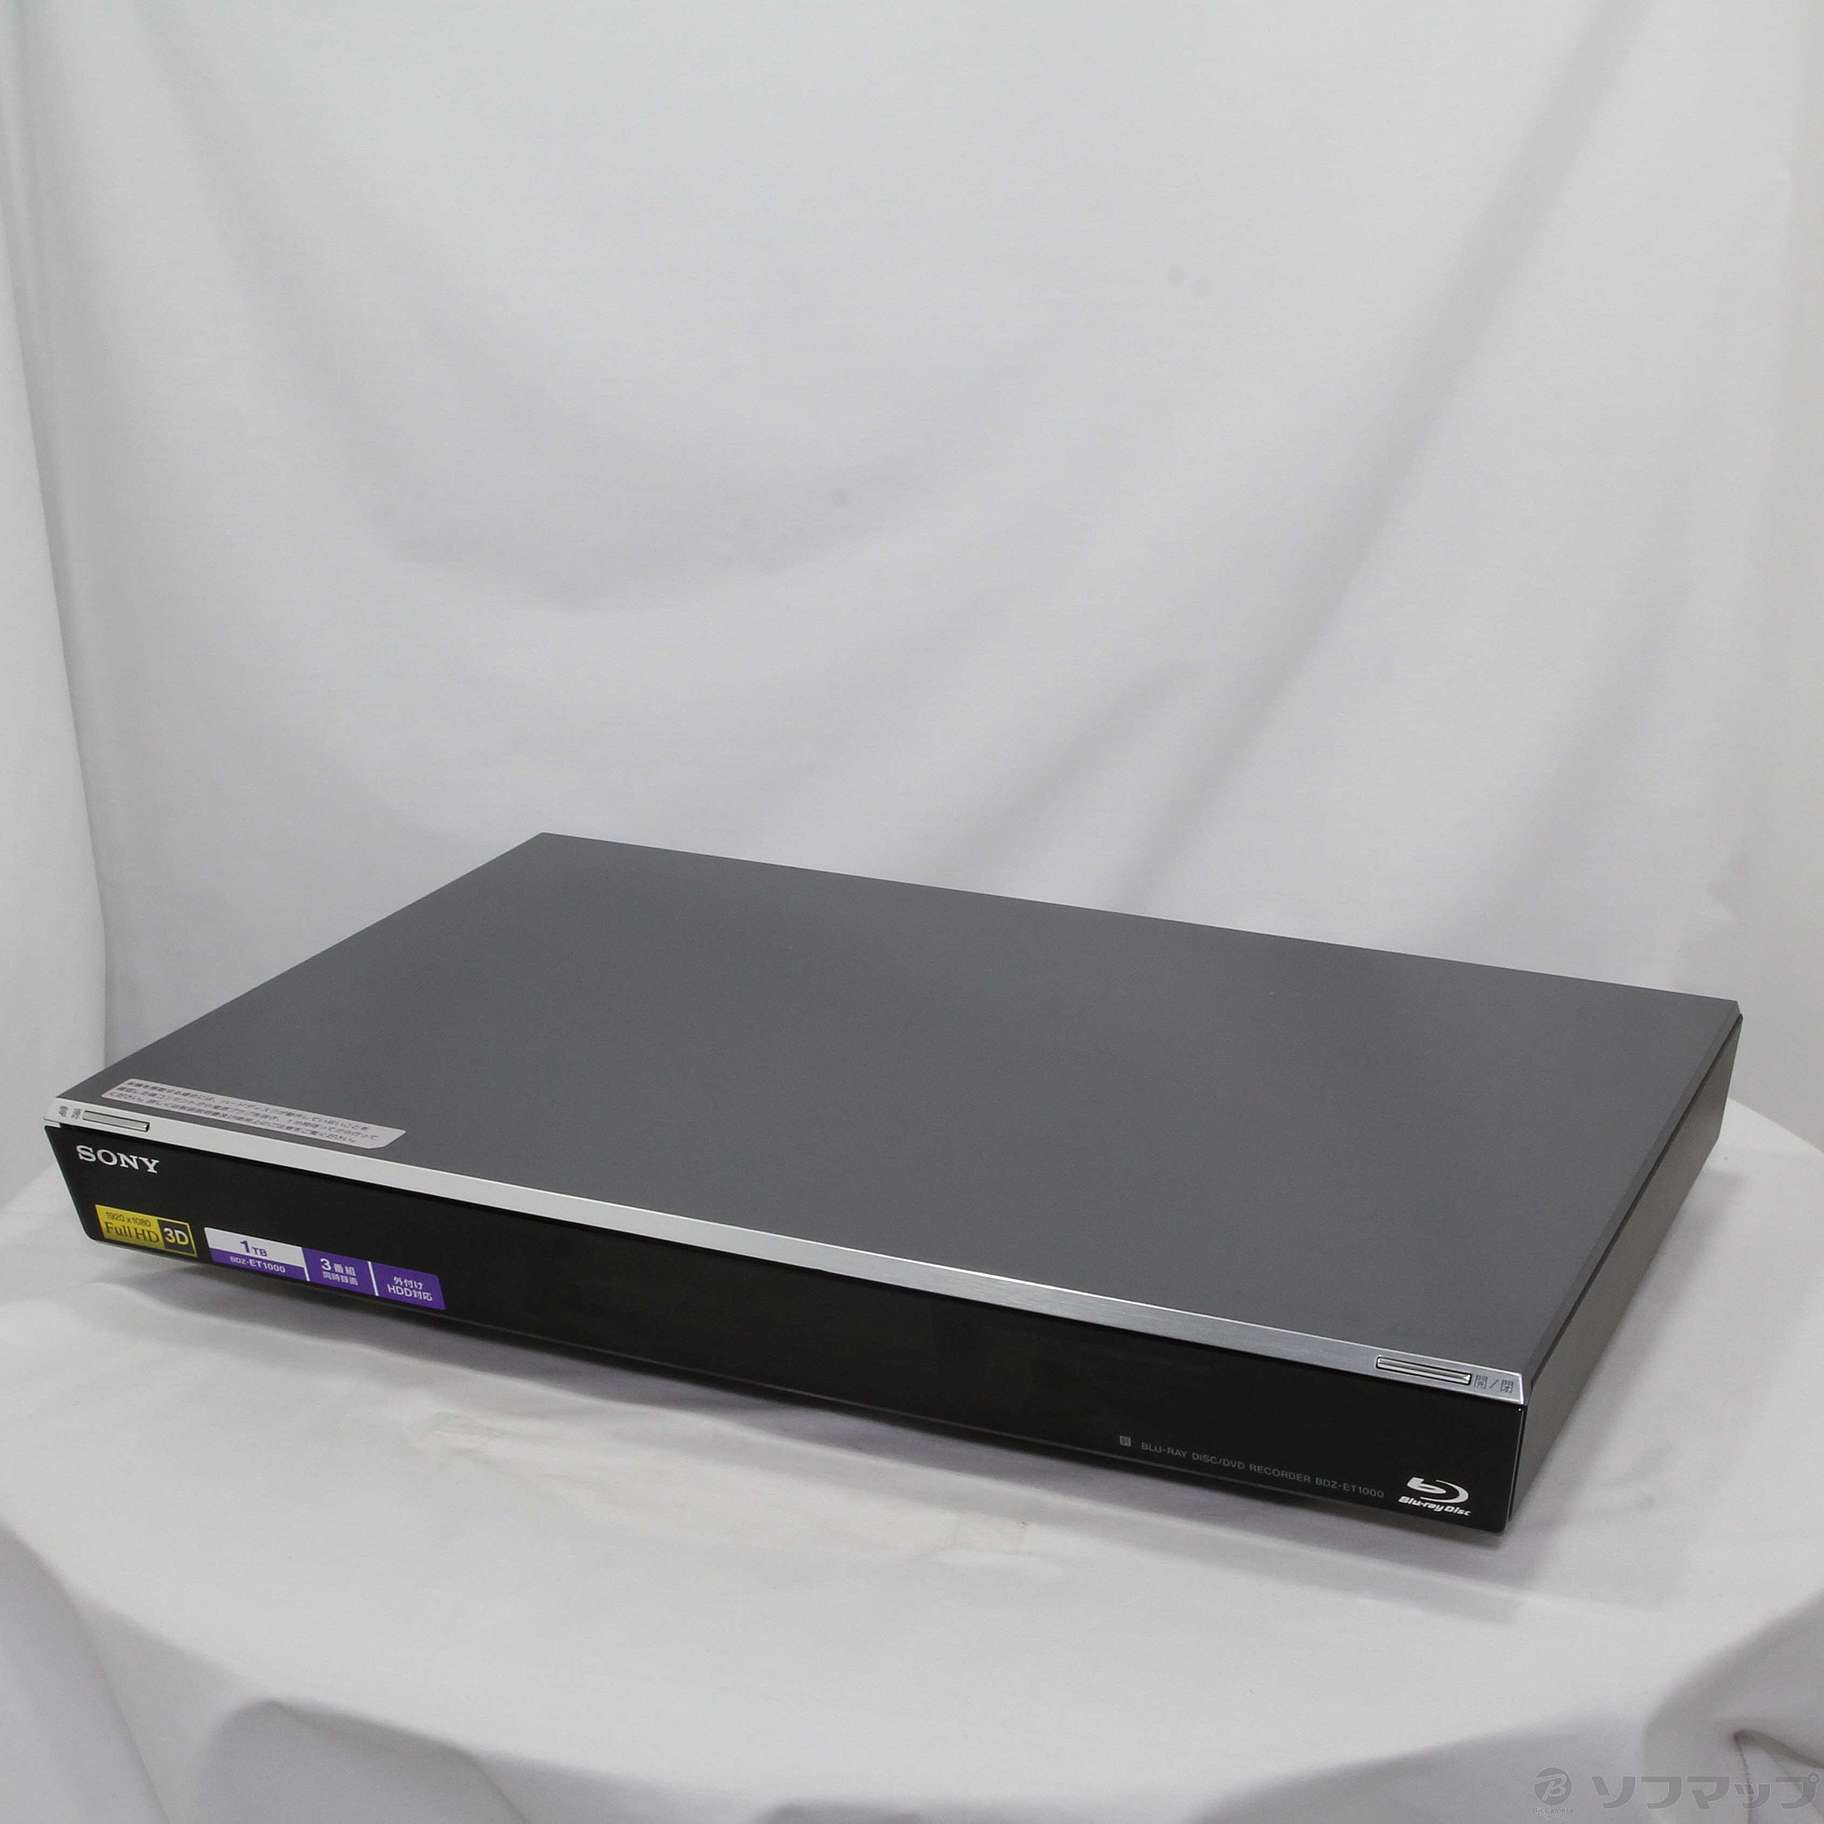 ブルーレイ/DVDレコーダー 1TB 3番組同時録画 (BDZ-ET1000)-